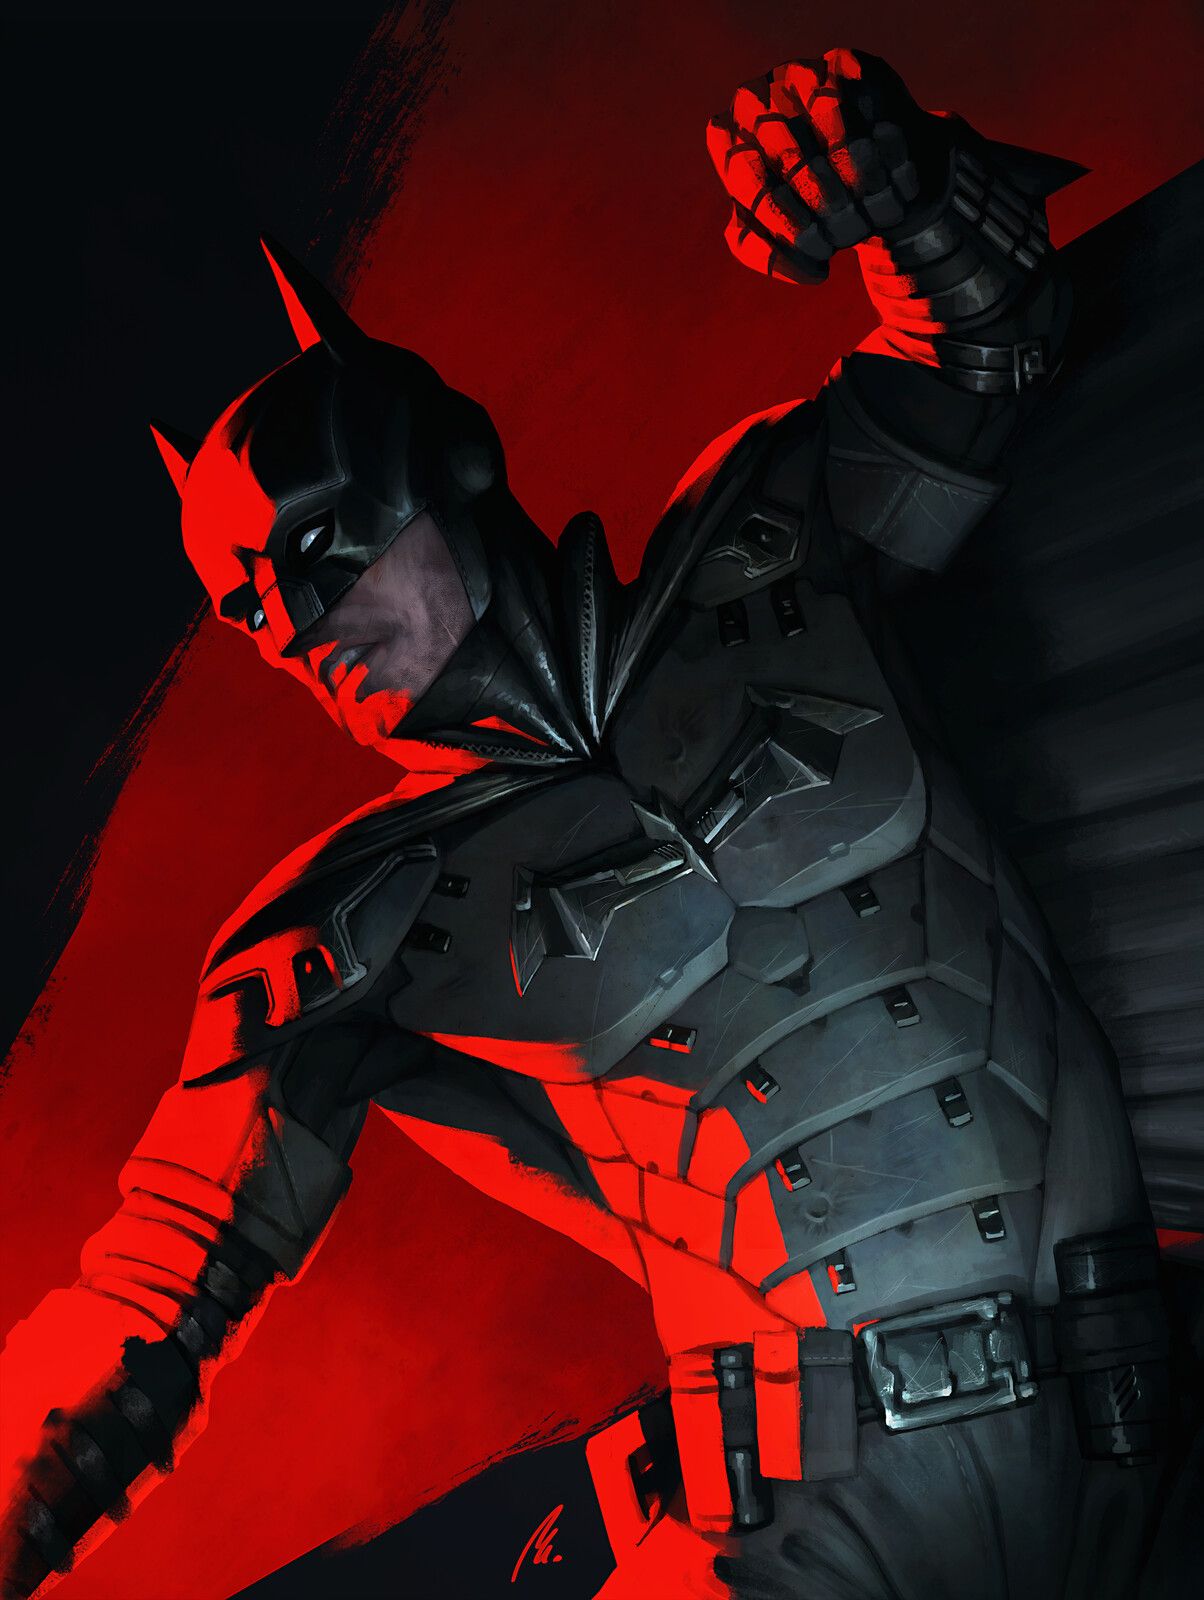 Batman 2022 Concept Art Wallpapers - Wallpaper Cave